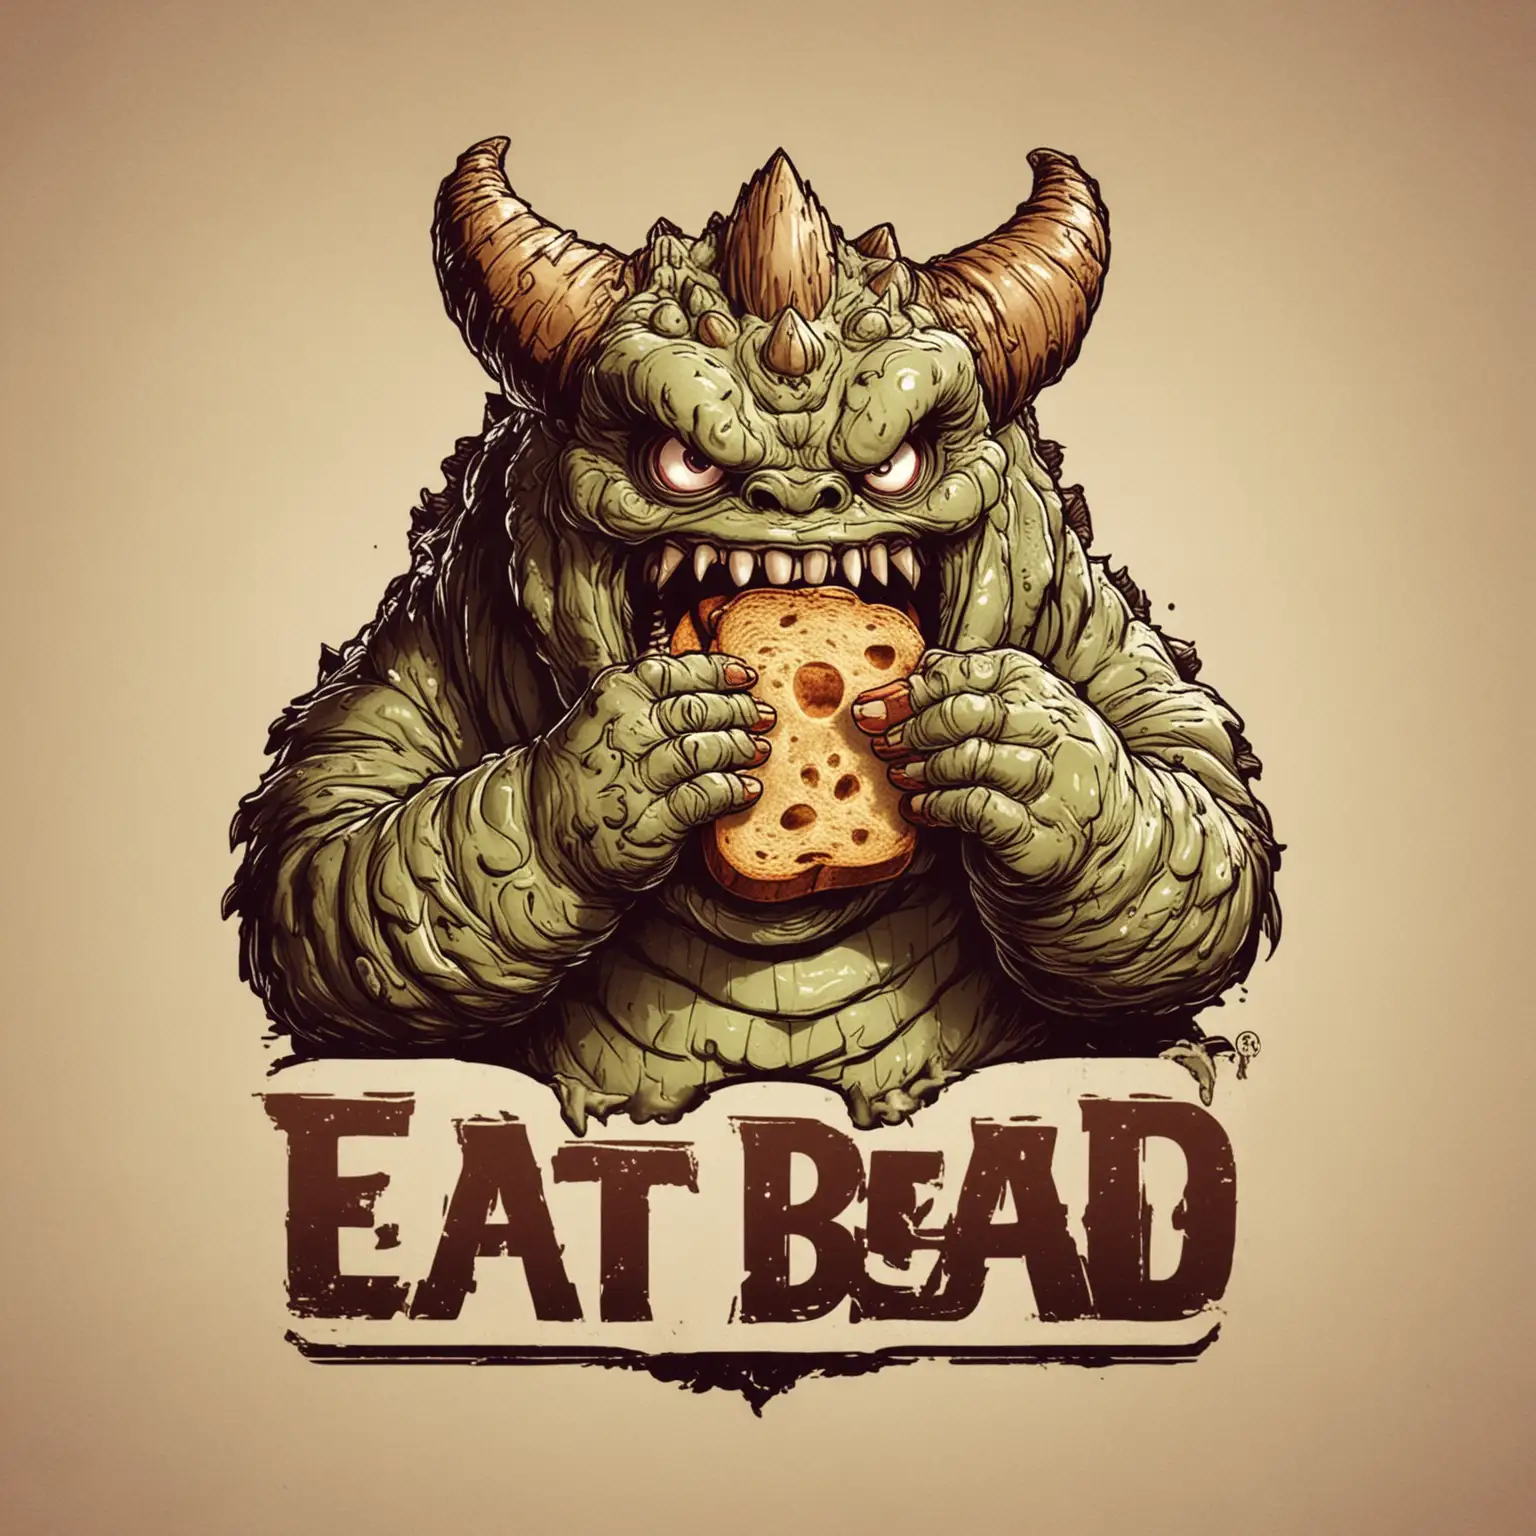 eat Bread, kaiju,monster,logo,yummy,good,finger